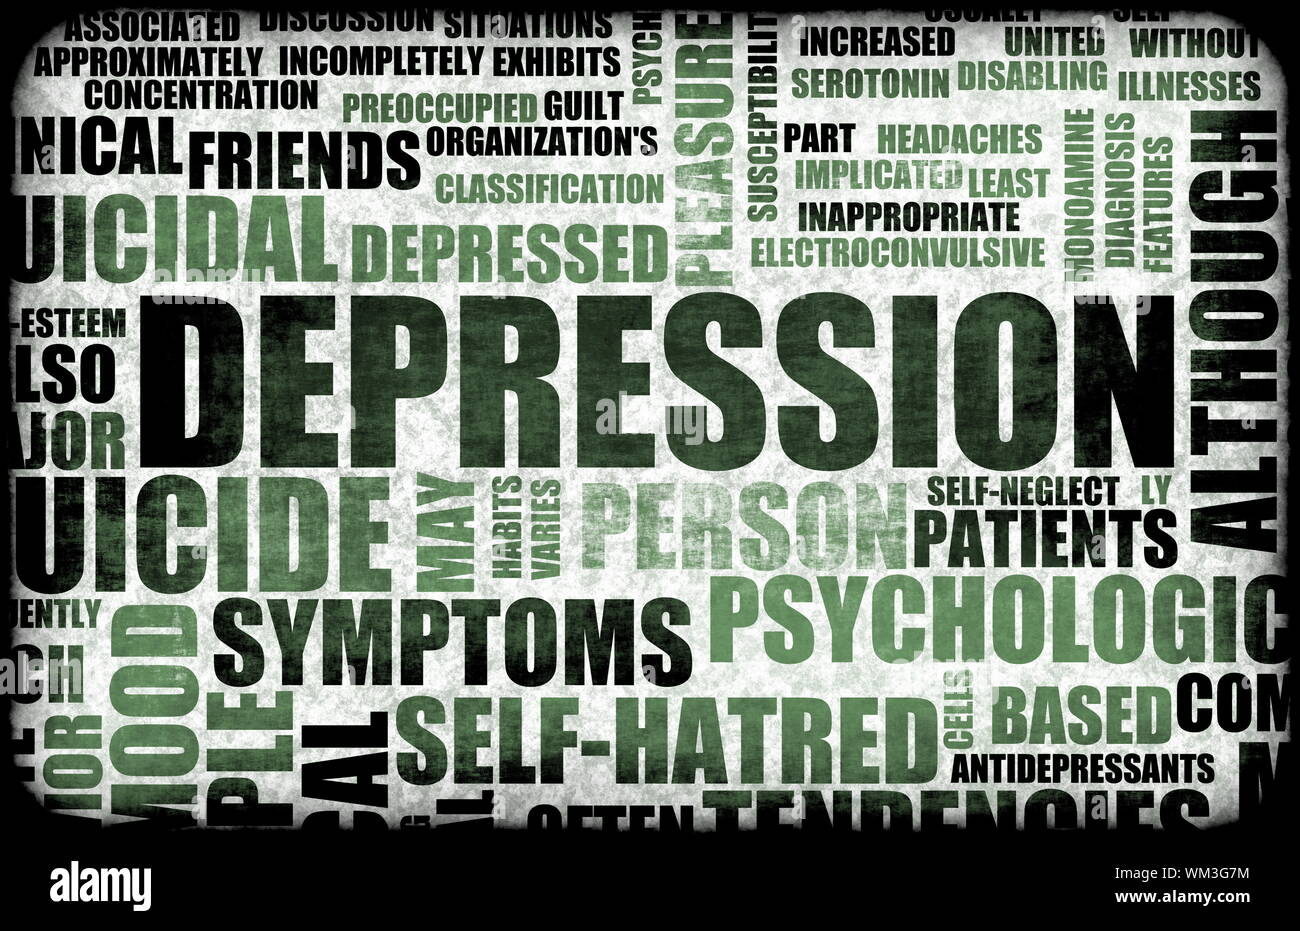 Depression severe Severe depression: